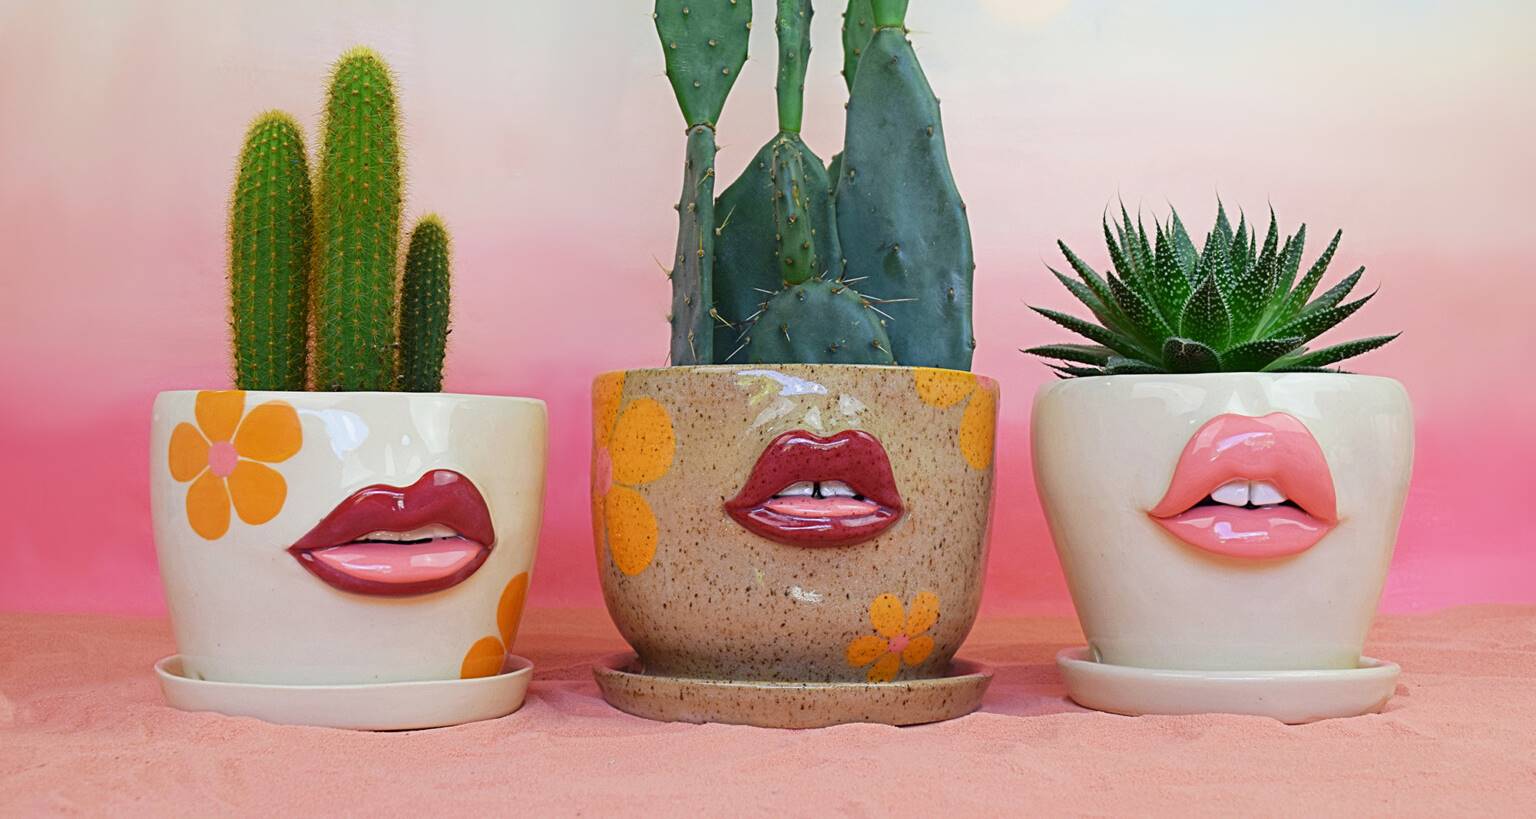 Ova umetnica pravi predmete od keramike sa zavodljivim usnama